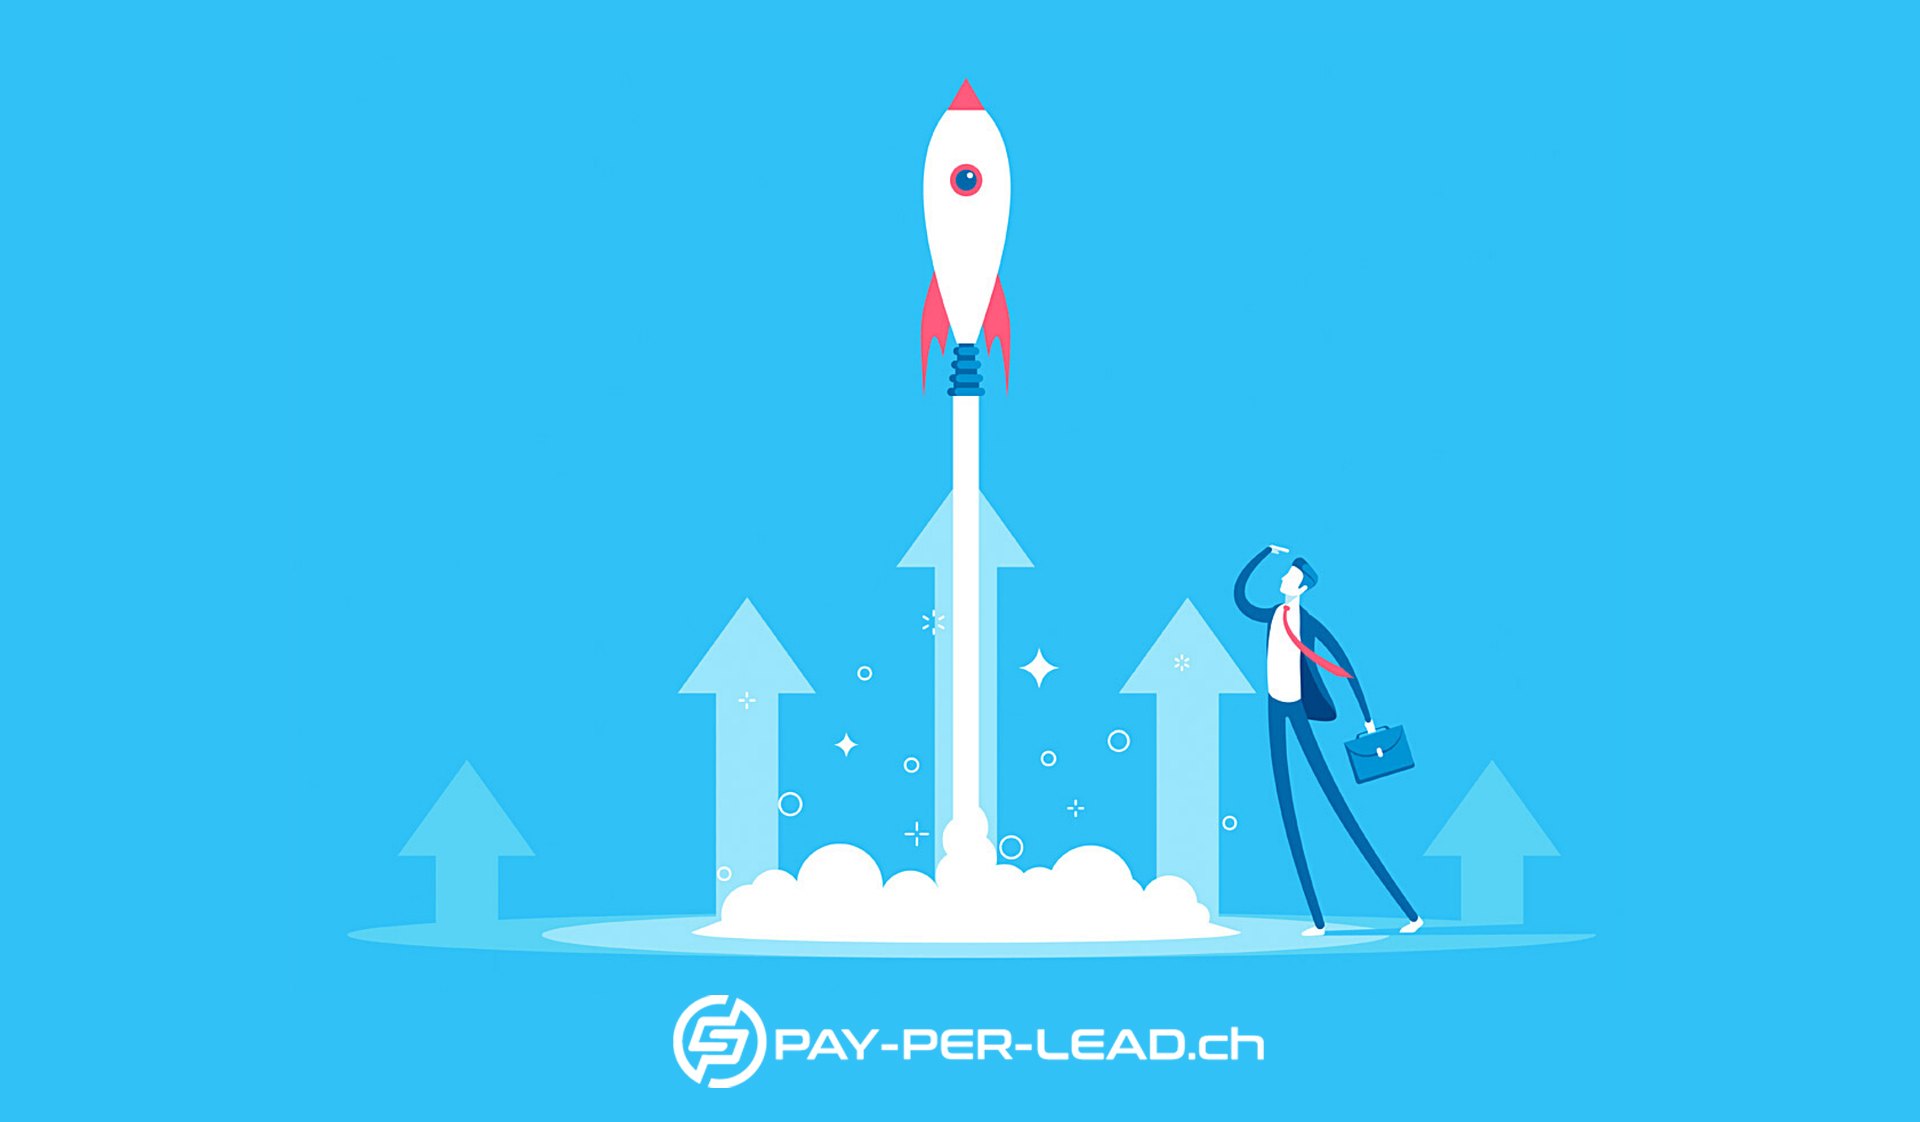 Pay-per-Lead.ch Pay per Lead Banner blau